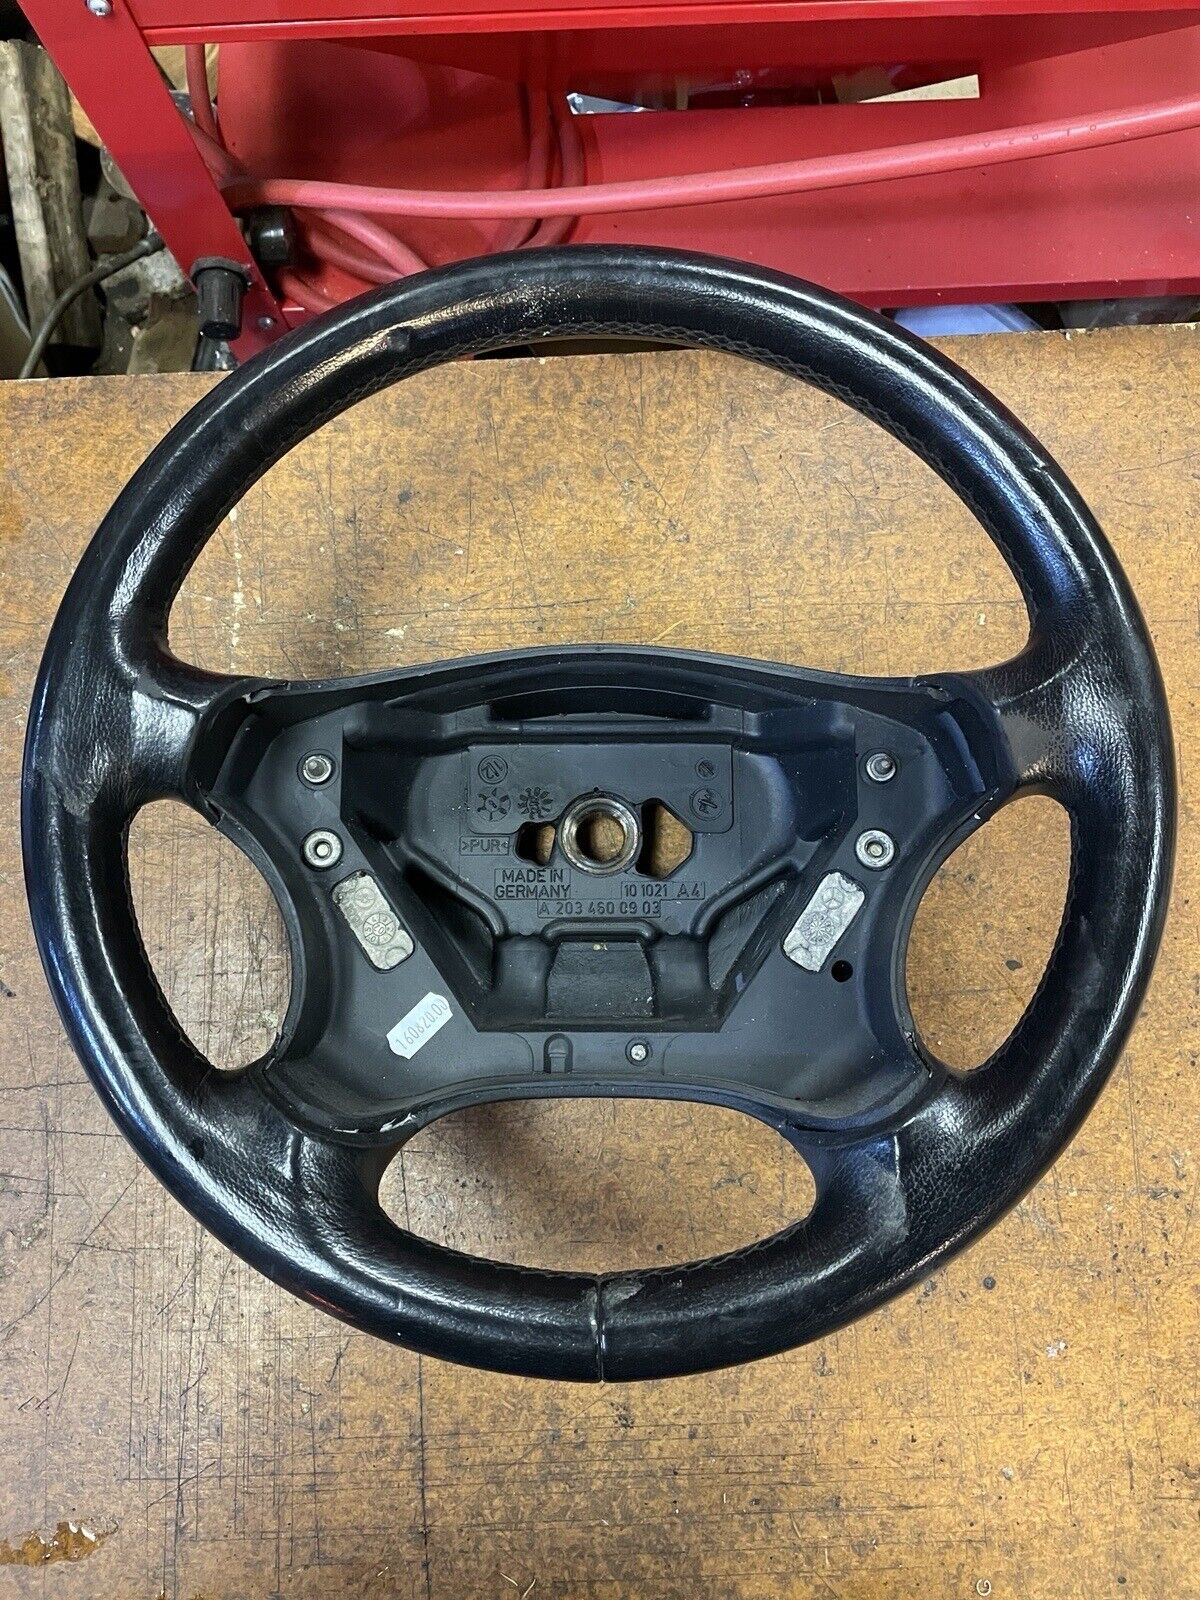 05-07 Mercedes W203 C230 C350 4 Spoke Steering Wheel Leather Black OEM